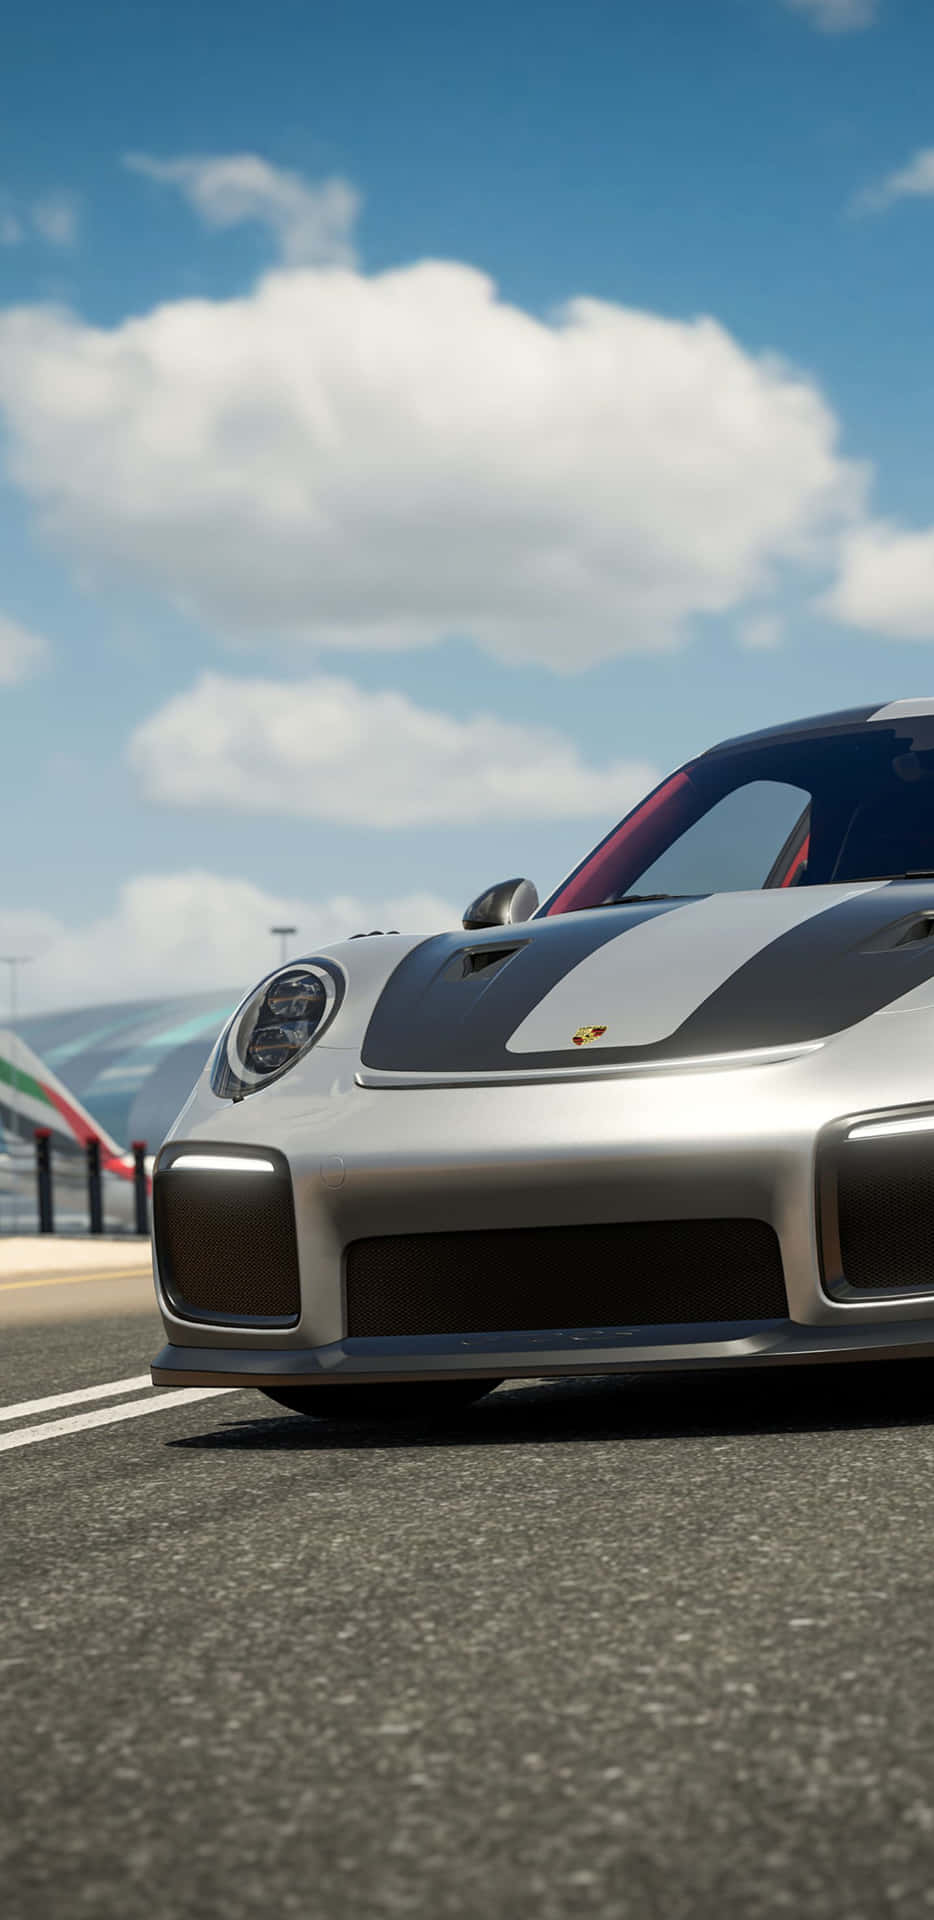 Hastighet,prestanda Och Sofistikering: Forza Motorsport 7 På Pixel 3xl